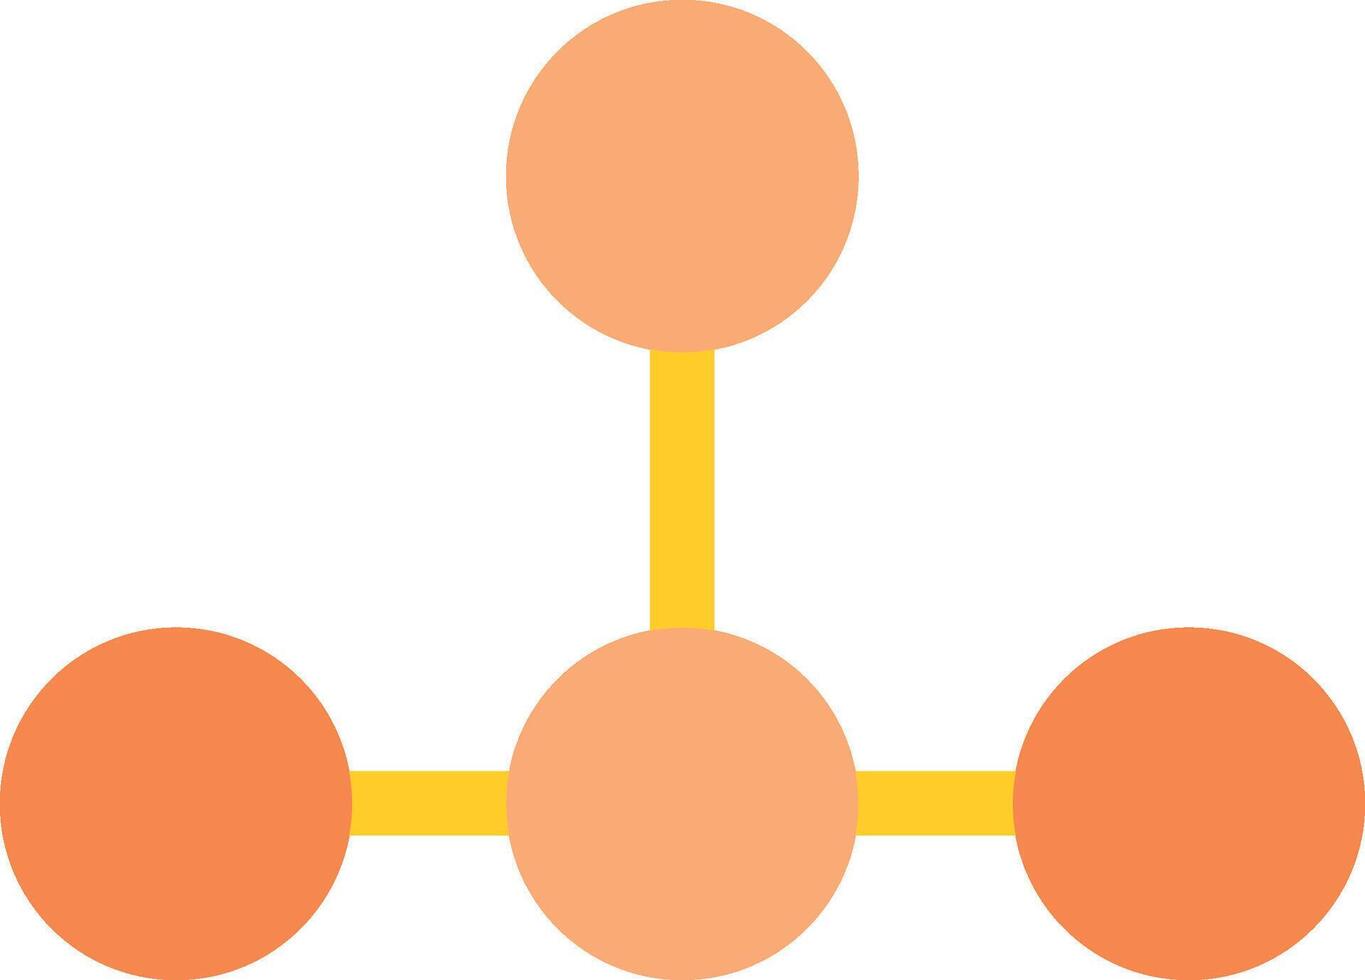 Draw Hierarchy Vector Icon